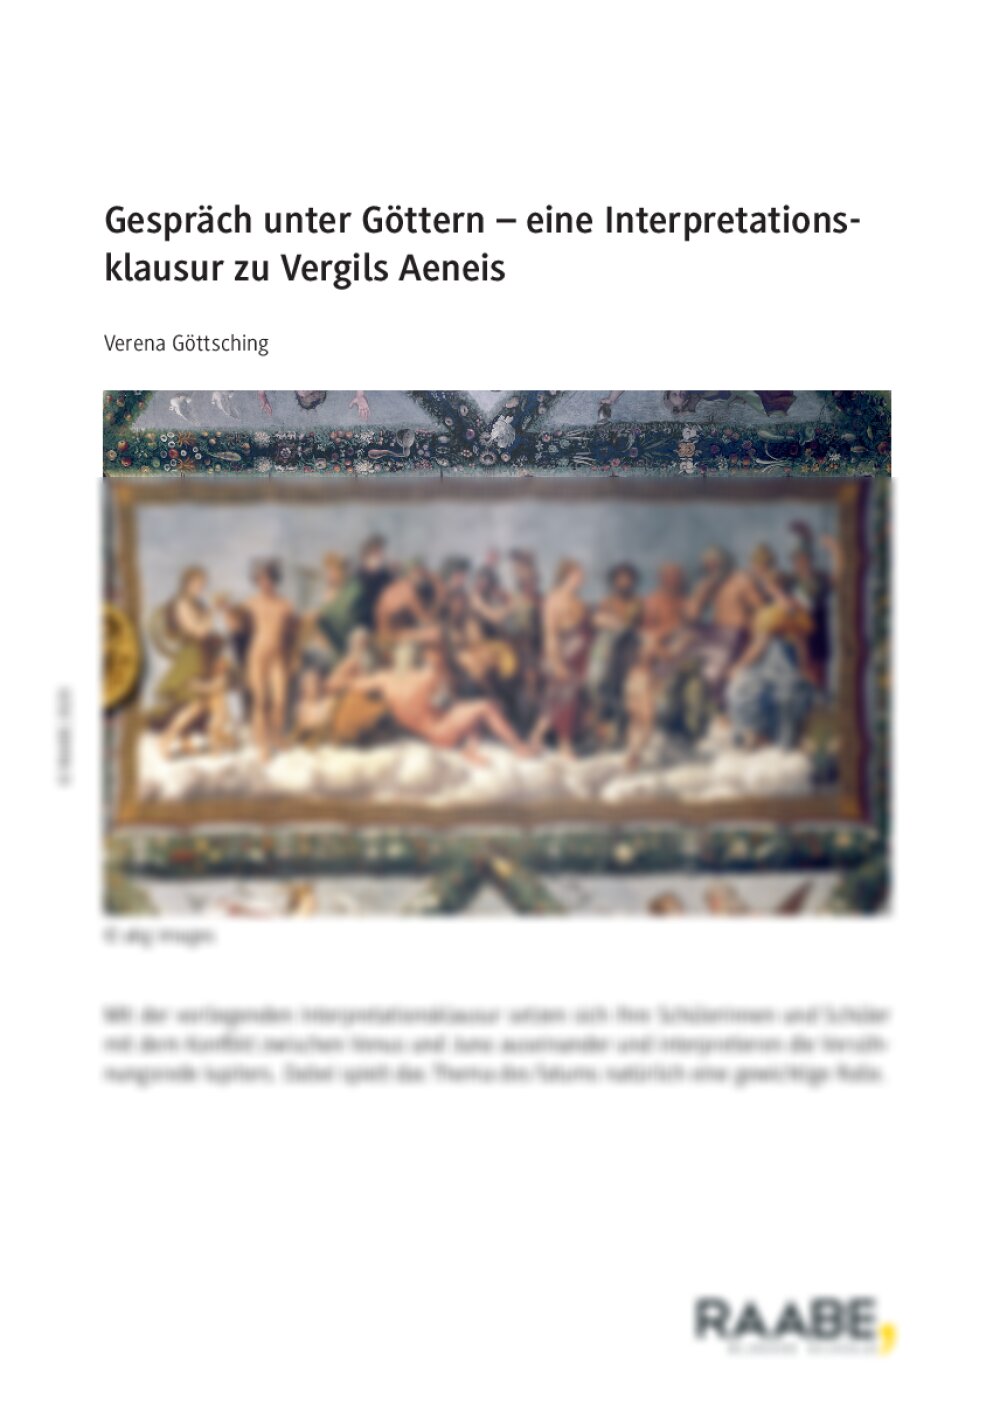 Interpretationsklausur zu Vergils Aeneis - Seite 1